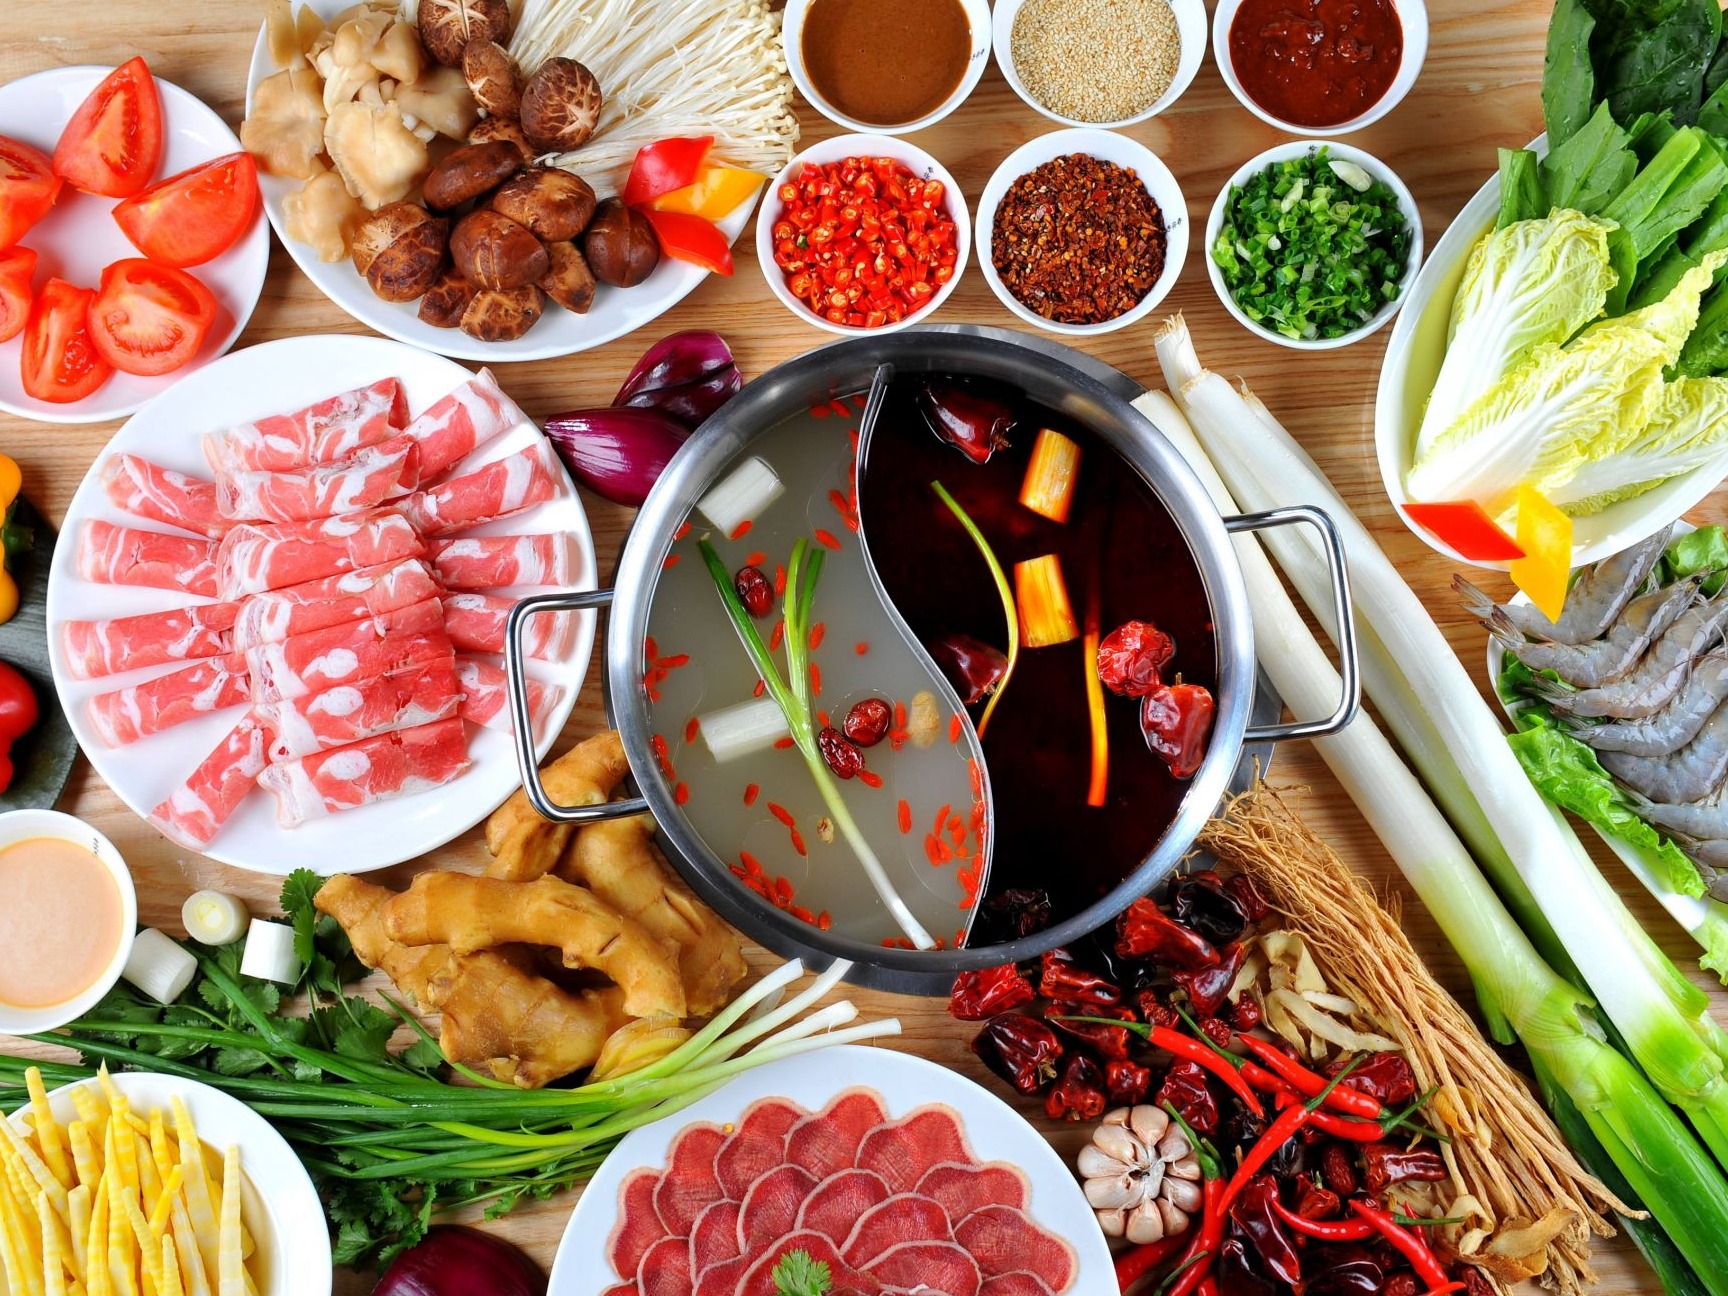 《中国餐饮大数据2021》发布 深圳人的挚爱居然是它